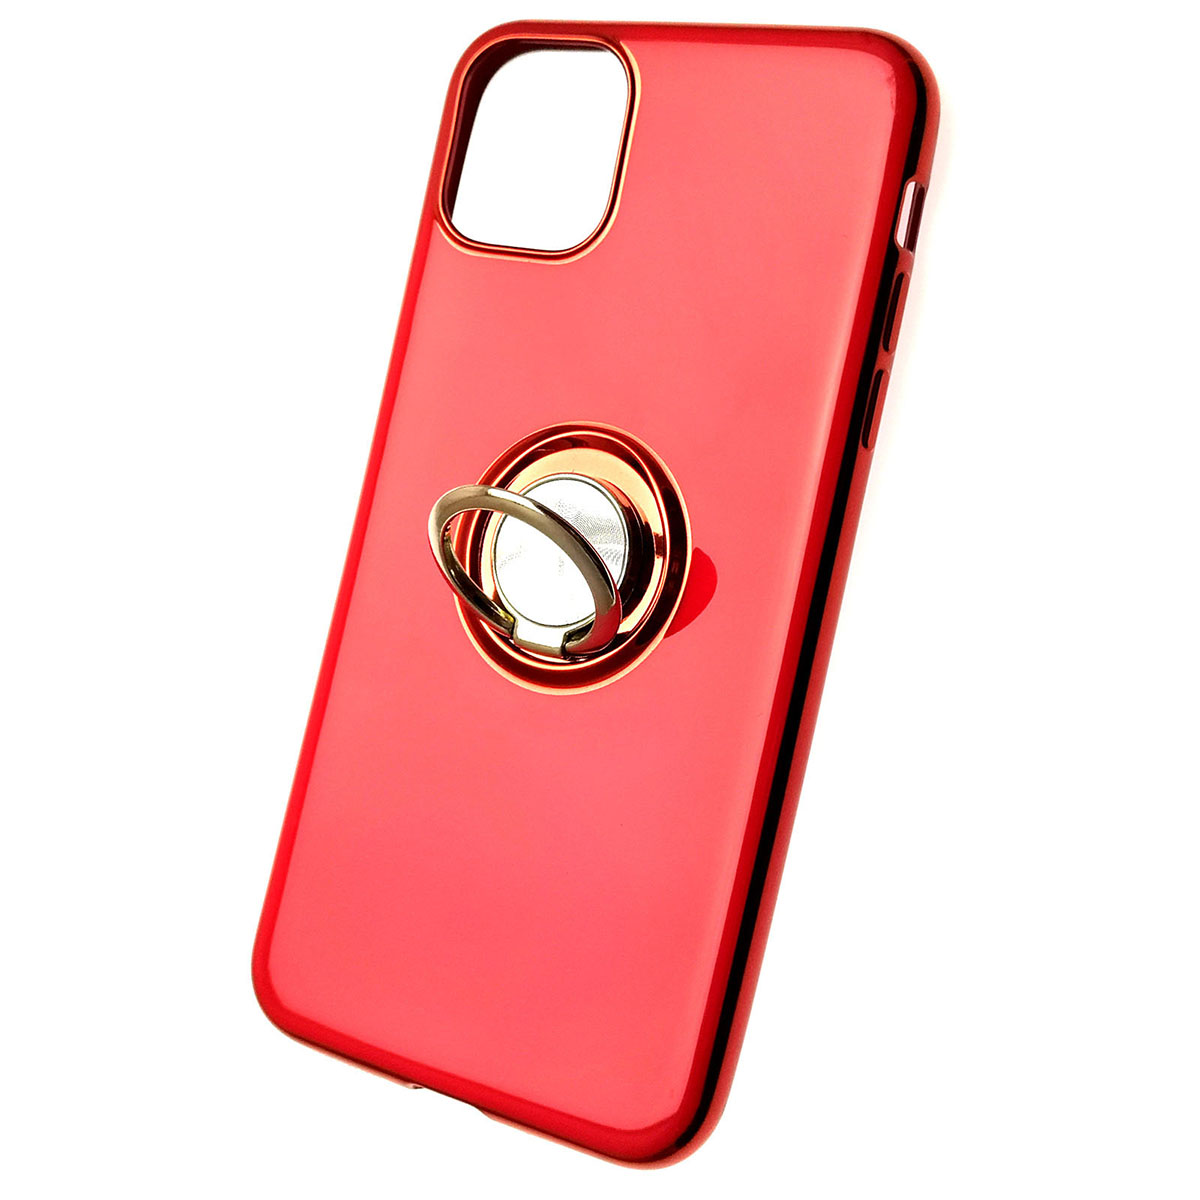 Чехол накладка для APPLE iPhone 11 Pro MAX, силикон, глянец, с лого, с кольцом, цвет красный.